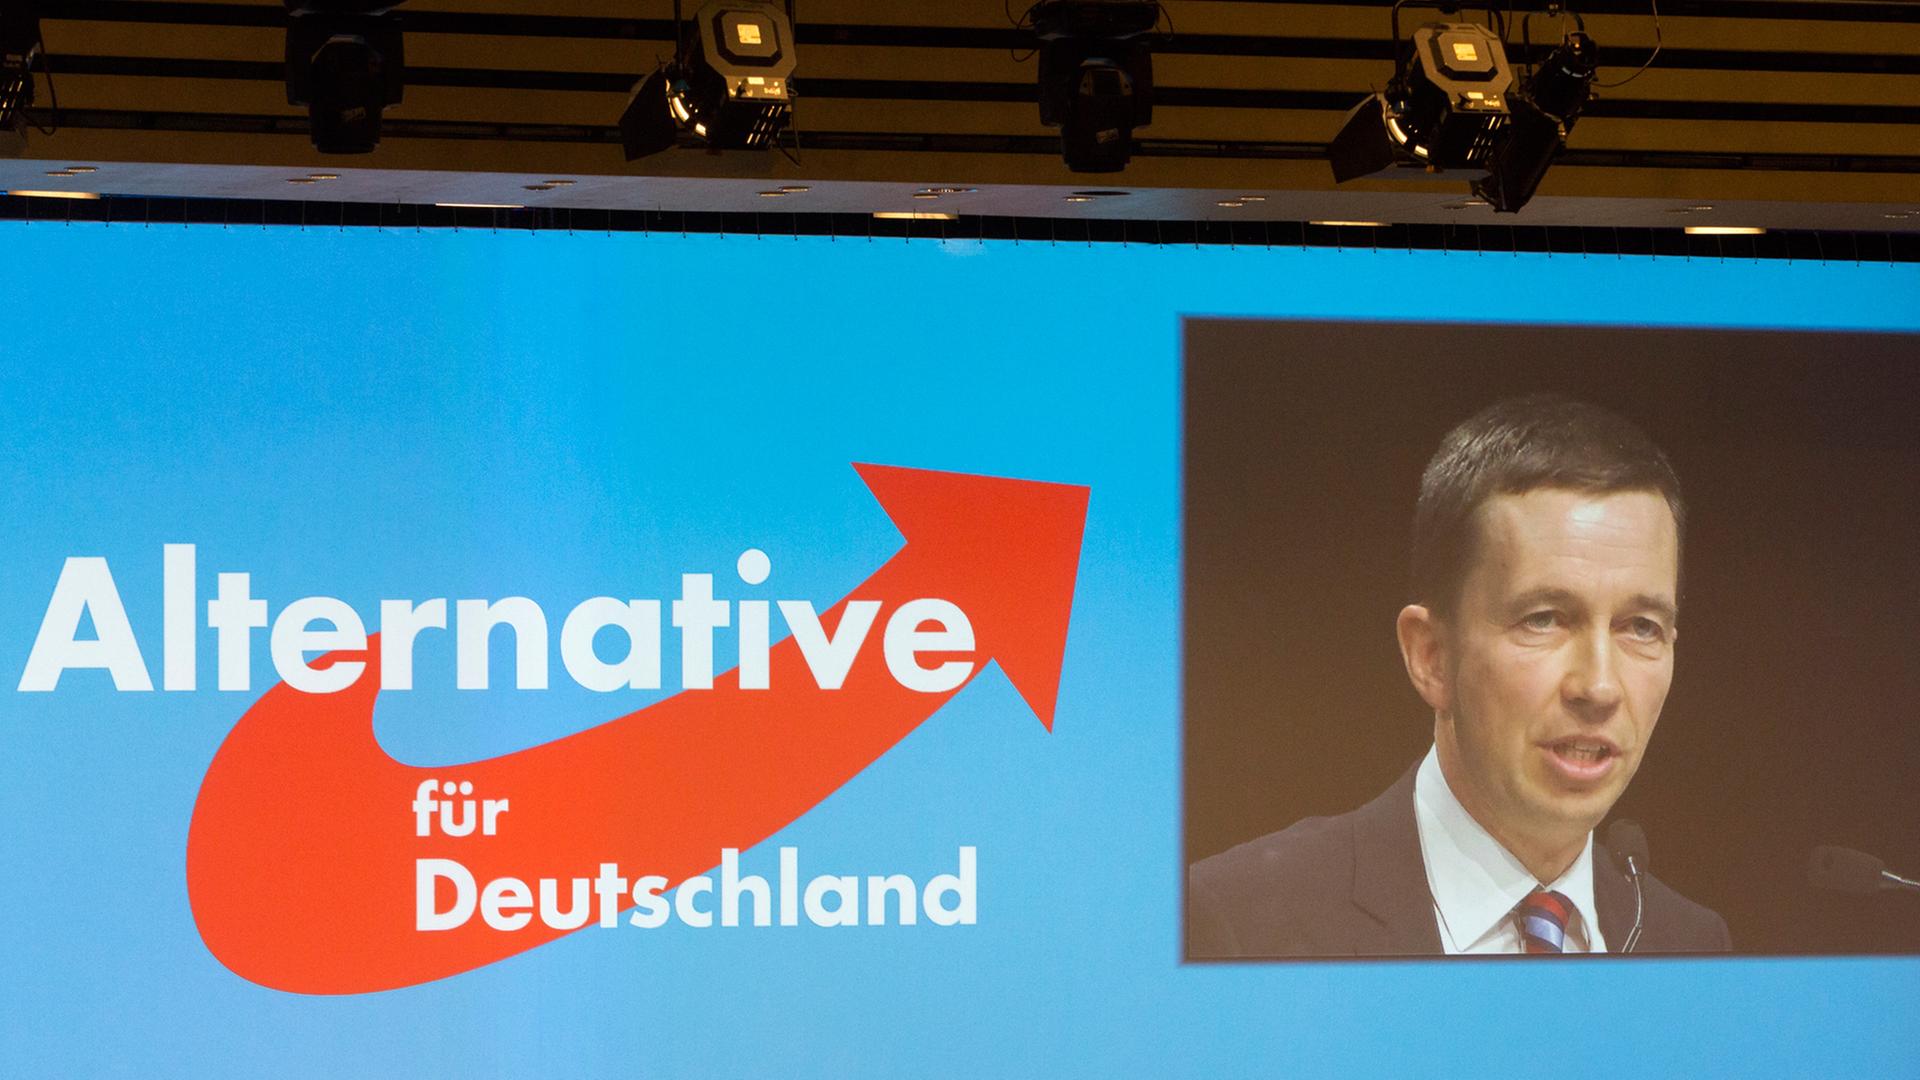 Leinwand mit dem Logo der AfD und einem Bild der Videoübertragung der Rede von Bernd Lucke.